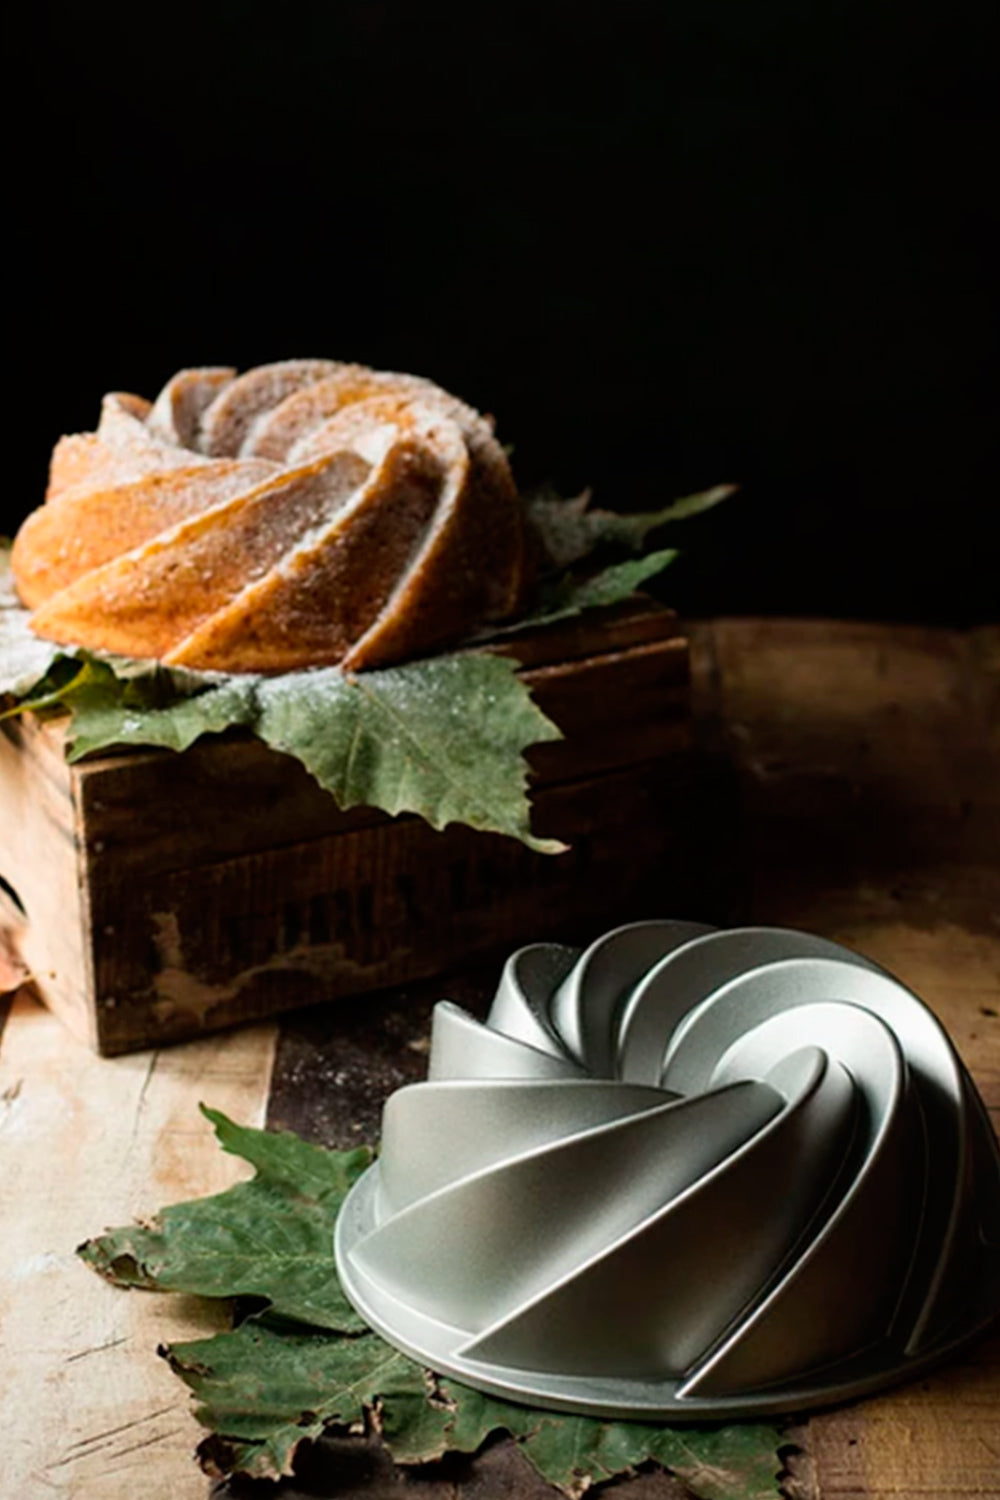 Consejos para moldes Nordic Ware y desmoldar un Bundt Cake